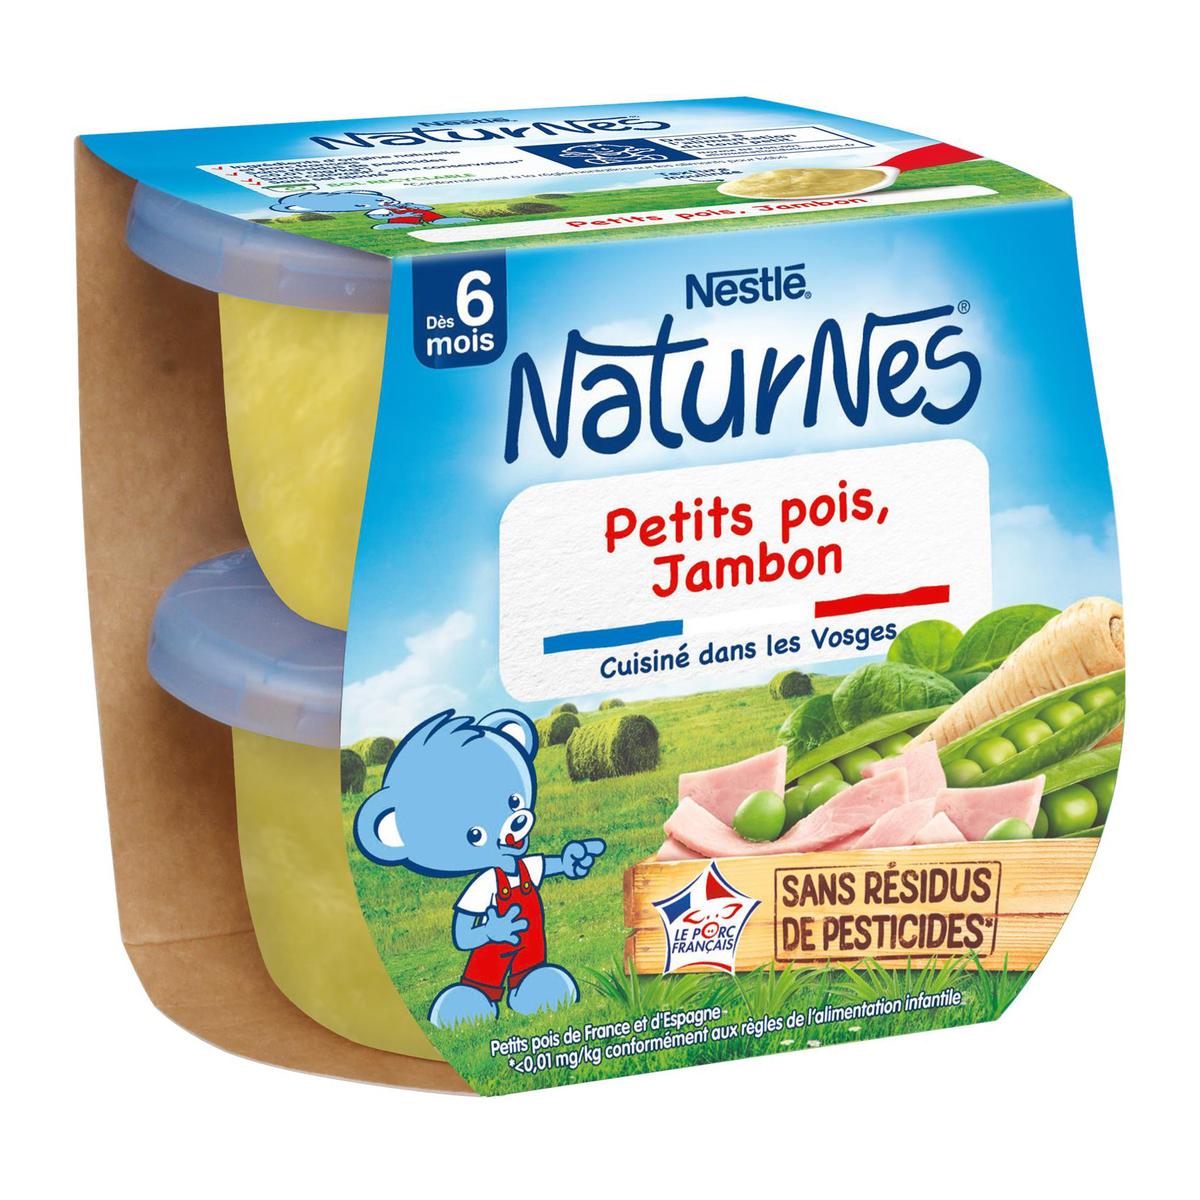 Achat Nestlé - Naturnes Petits pois jambon Bol Bébé Dès 6 mois, 2x200g